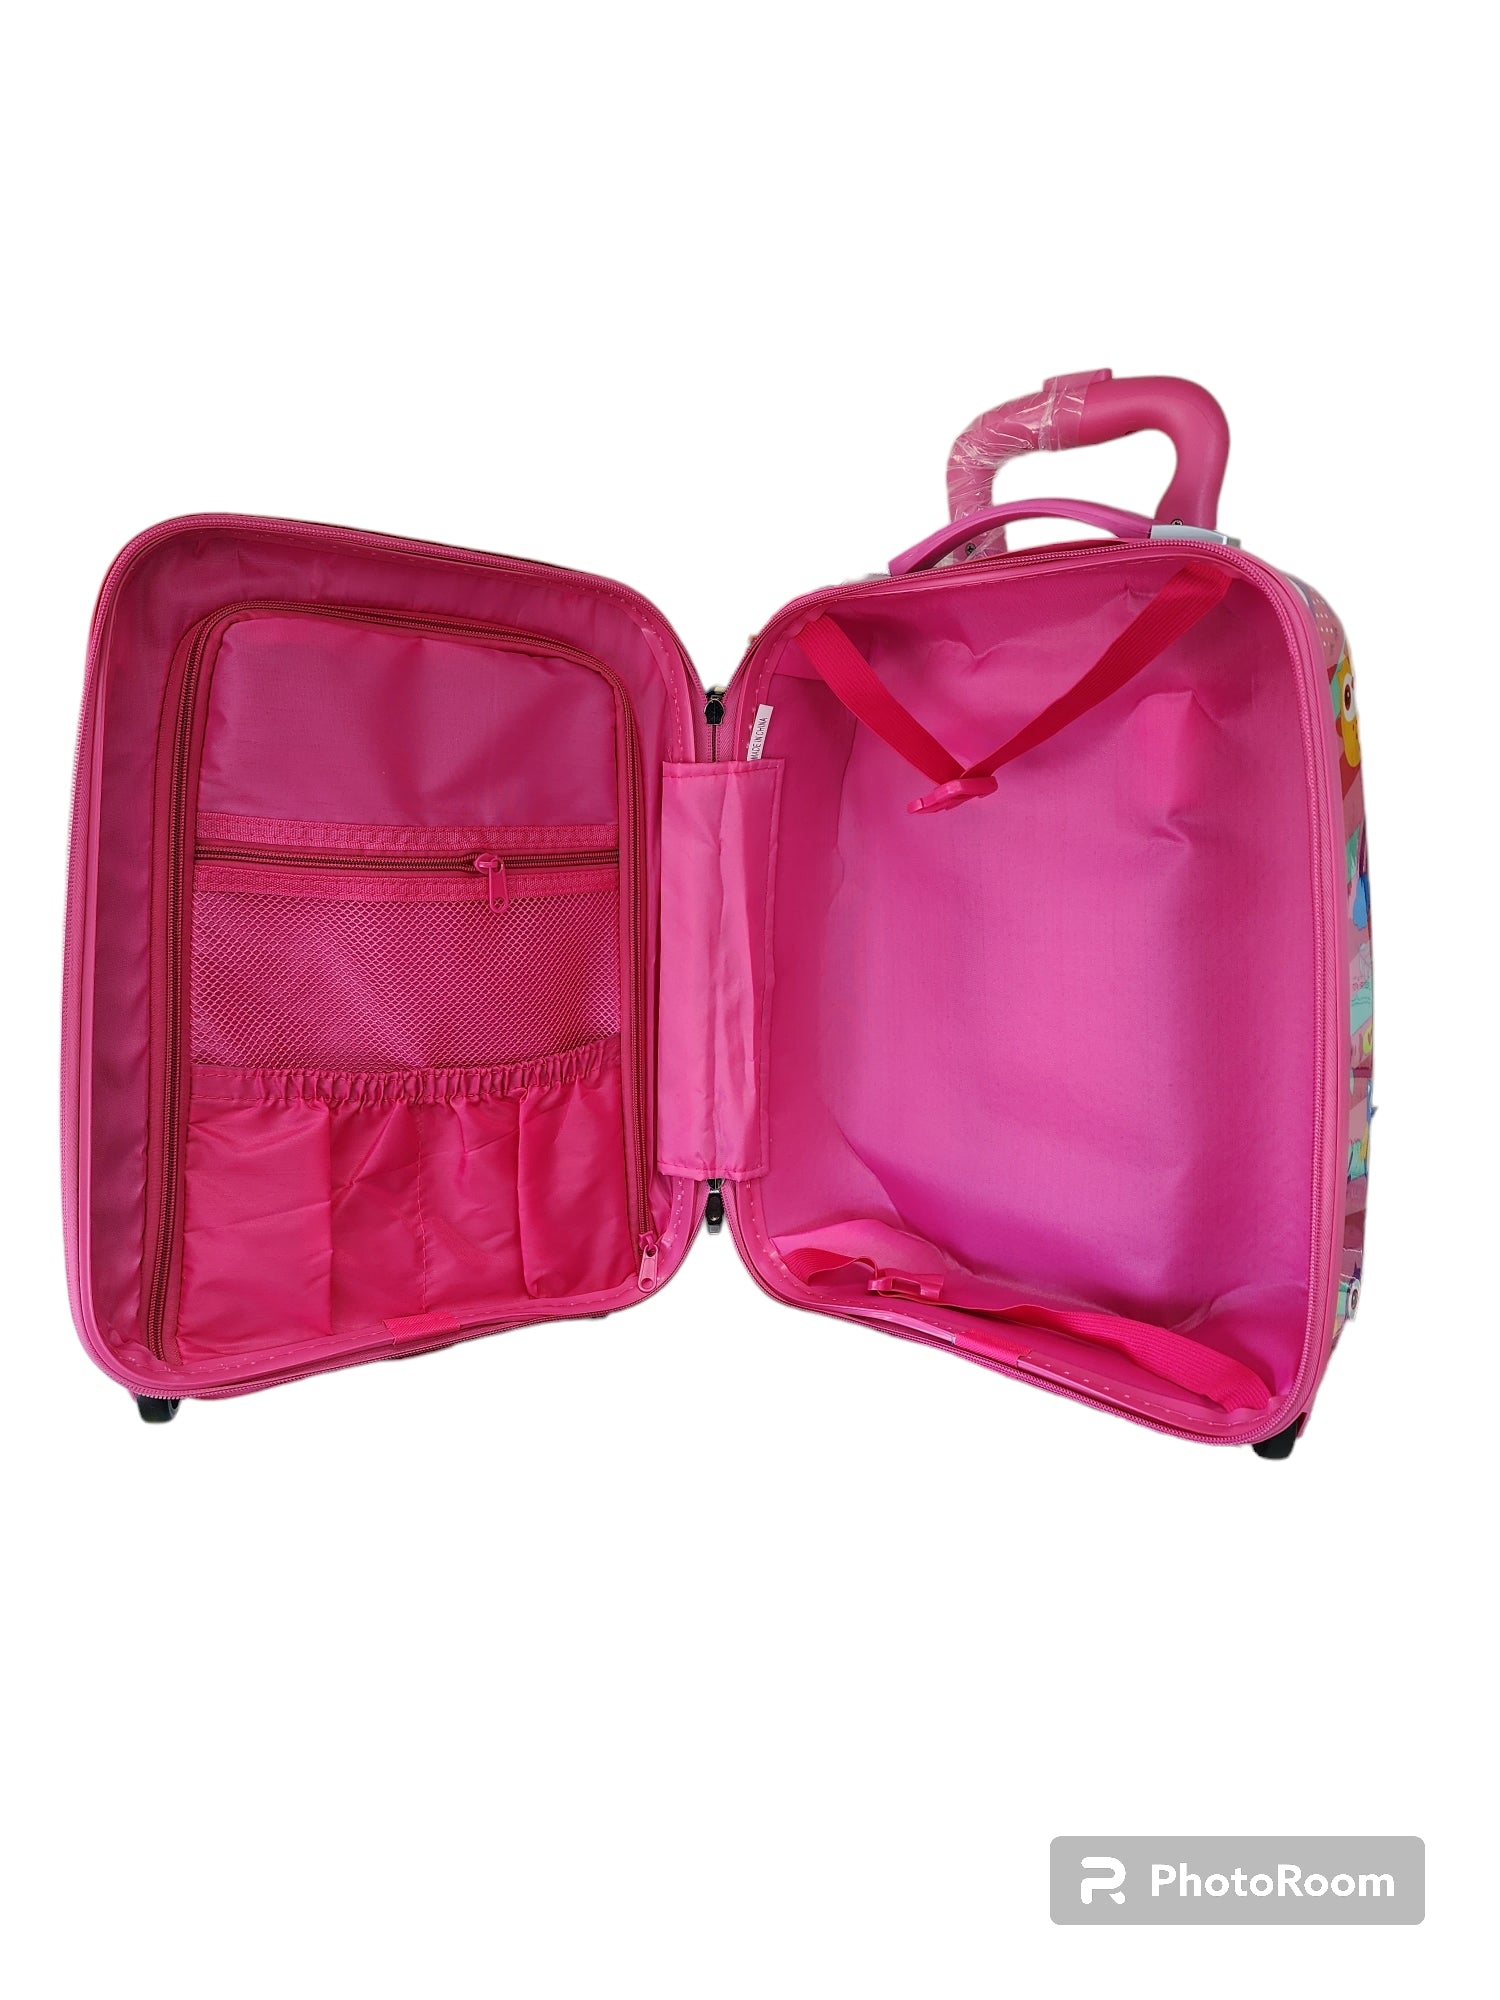 Kidz Bagz - 48cm Owl spinner suitcase - Pink-3